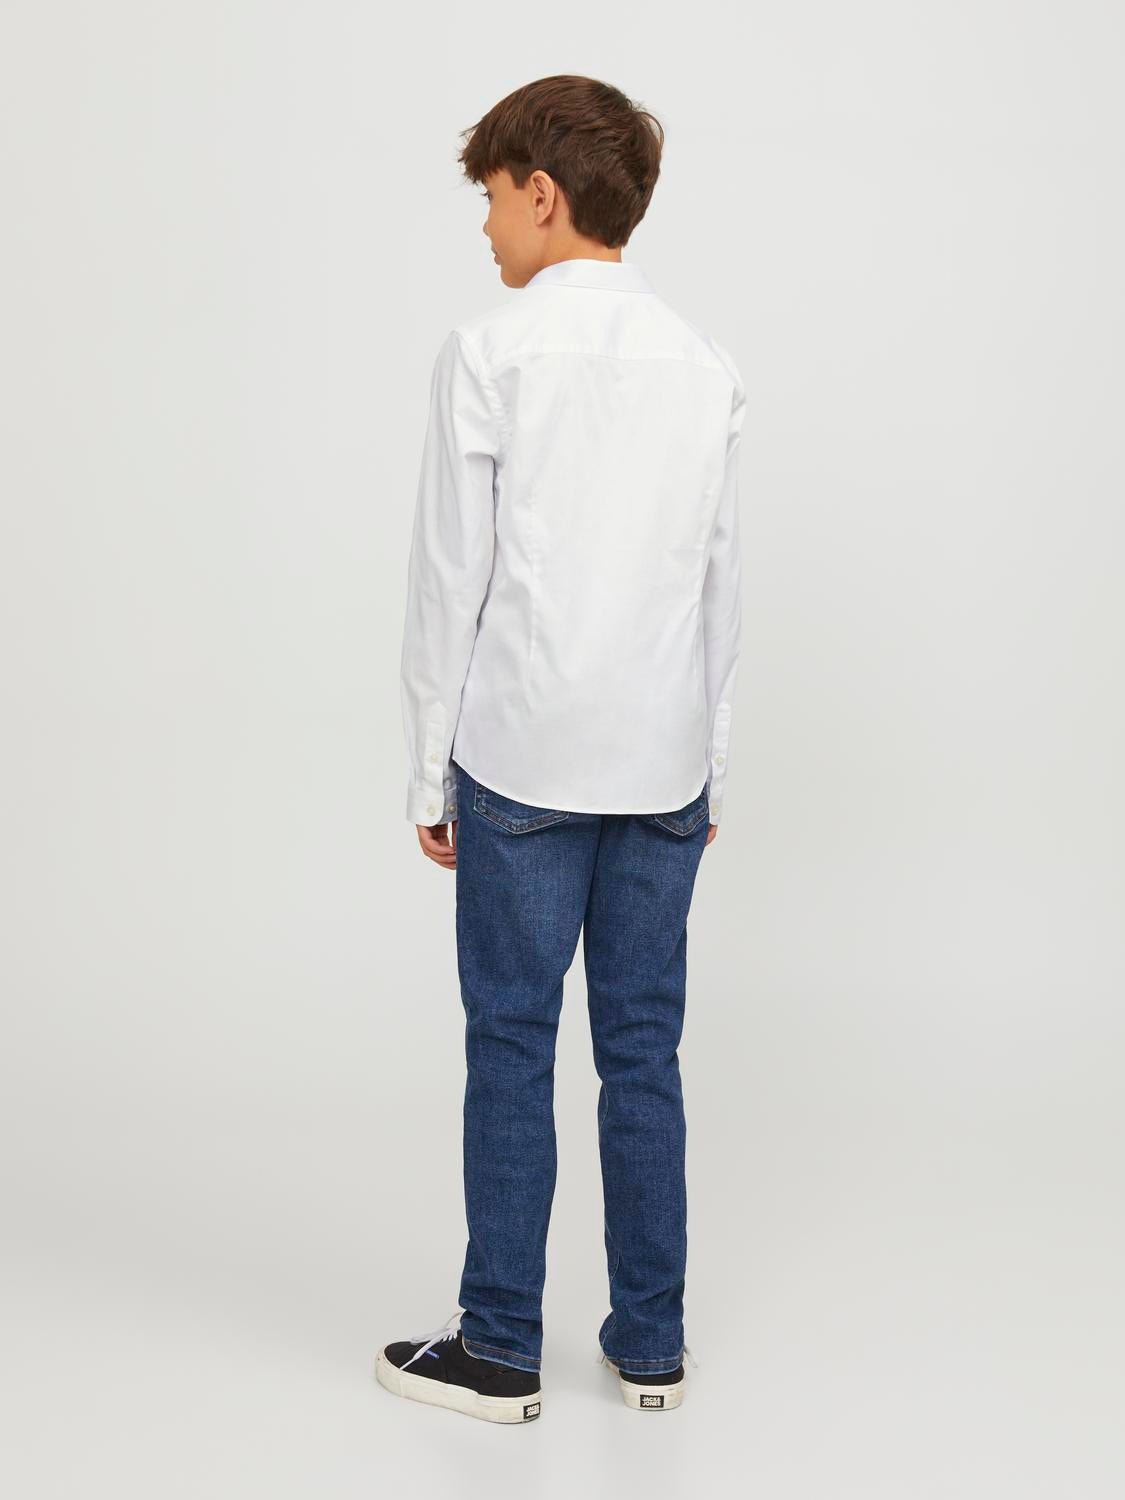 Jack & Jones Camisa Formal Para meninos -White - 12151620